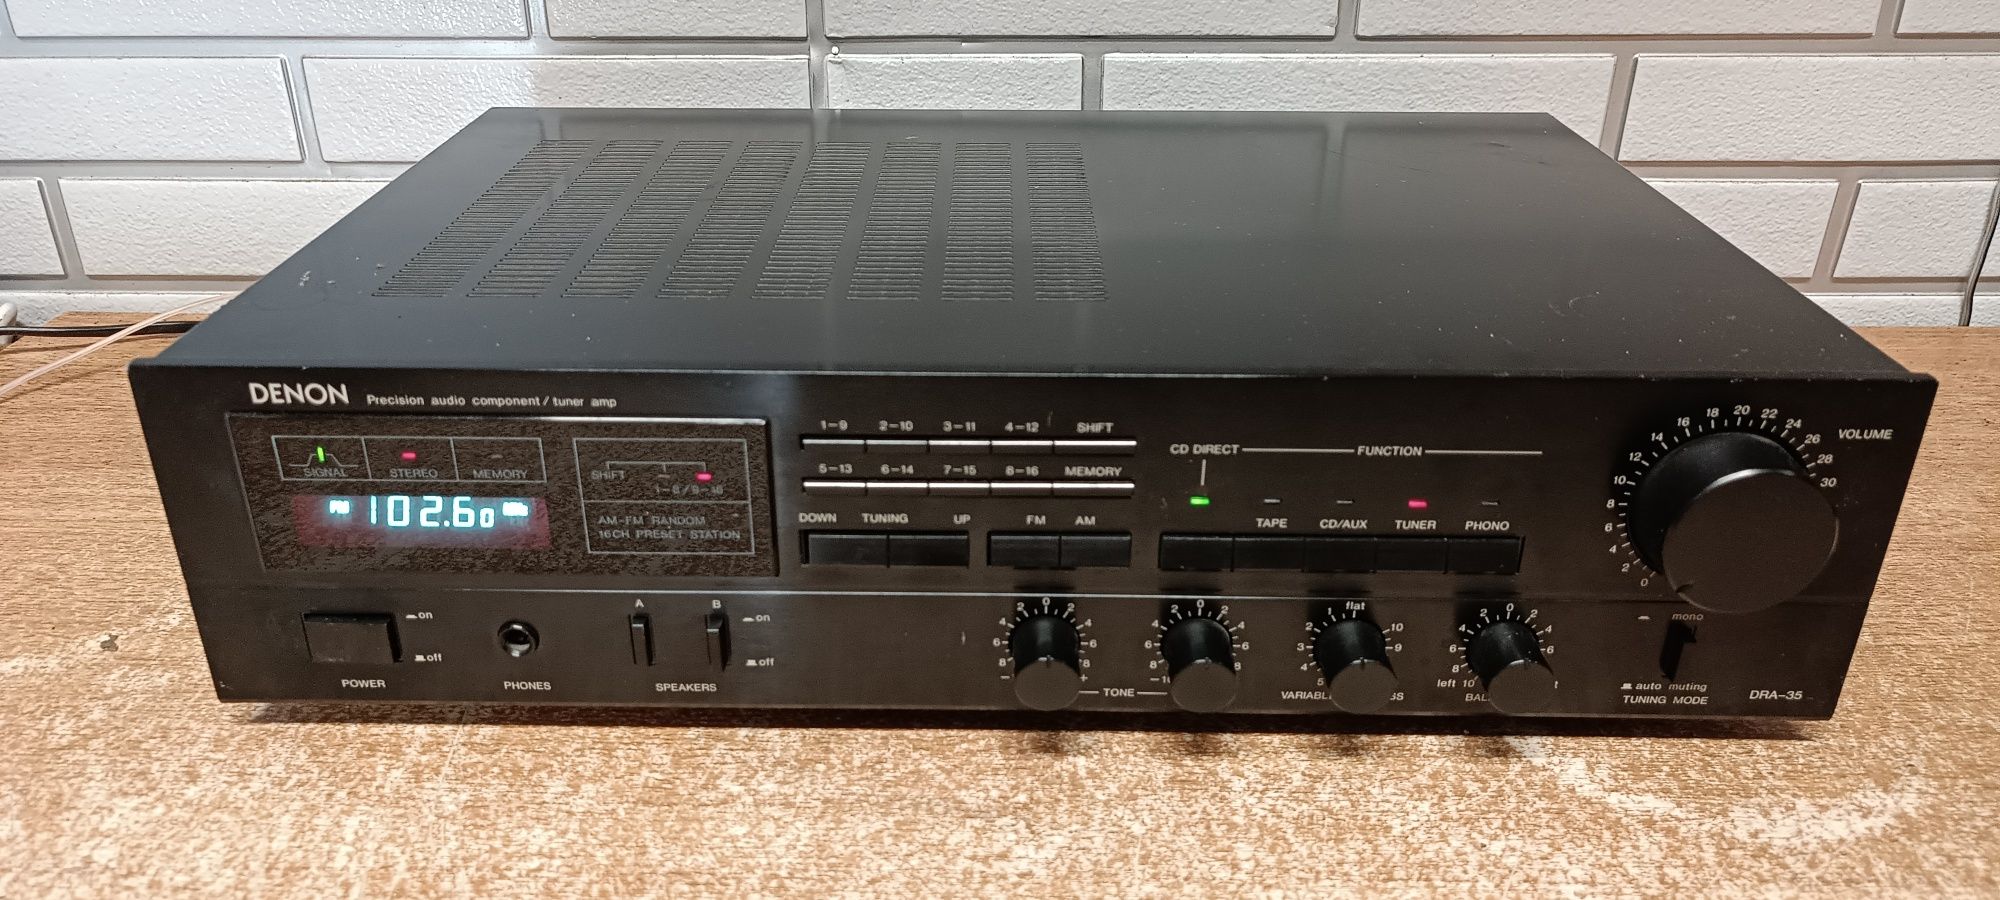 Amplituner stereo DENON DRA-35. Japan